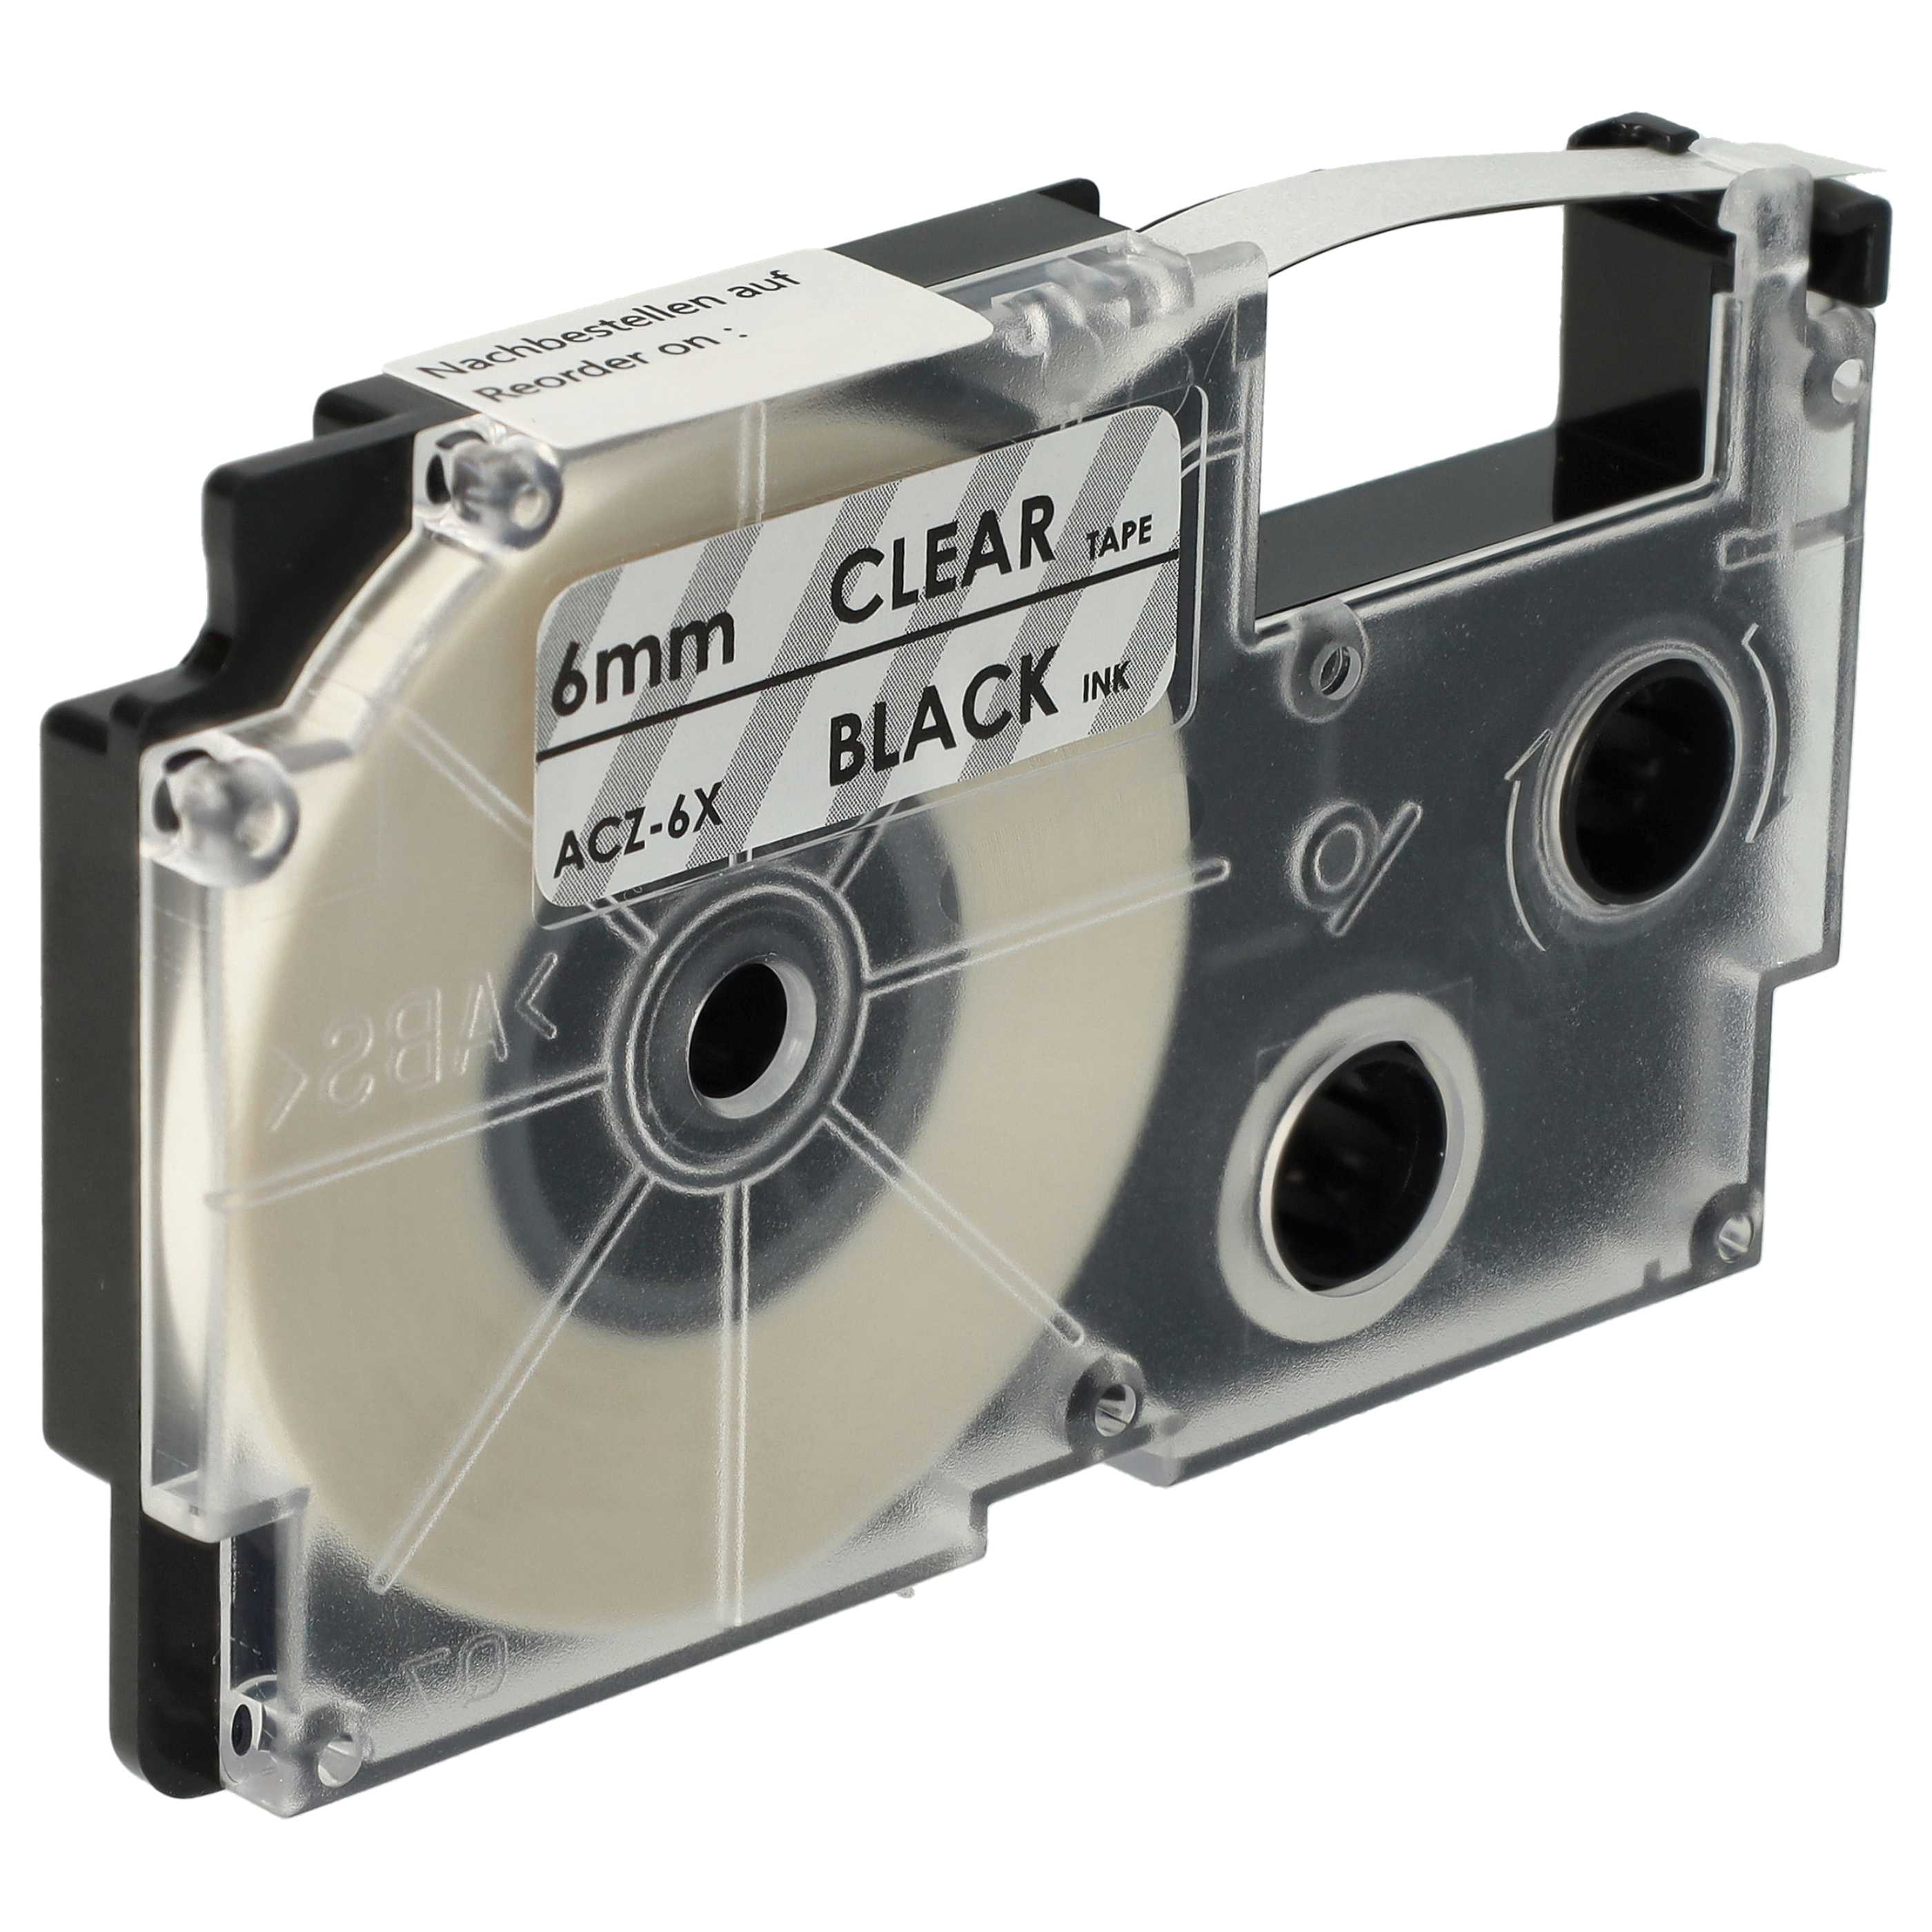 Cassette à ruban remplace Casio XR-6X1, XR-6X - 6mm lettrage Noir ruban Transparent